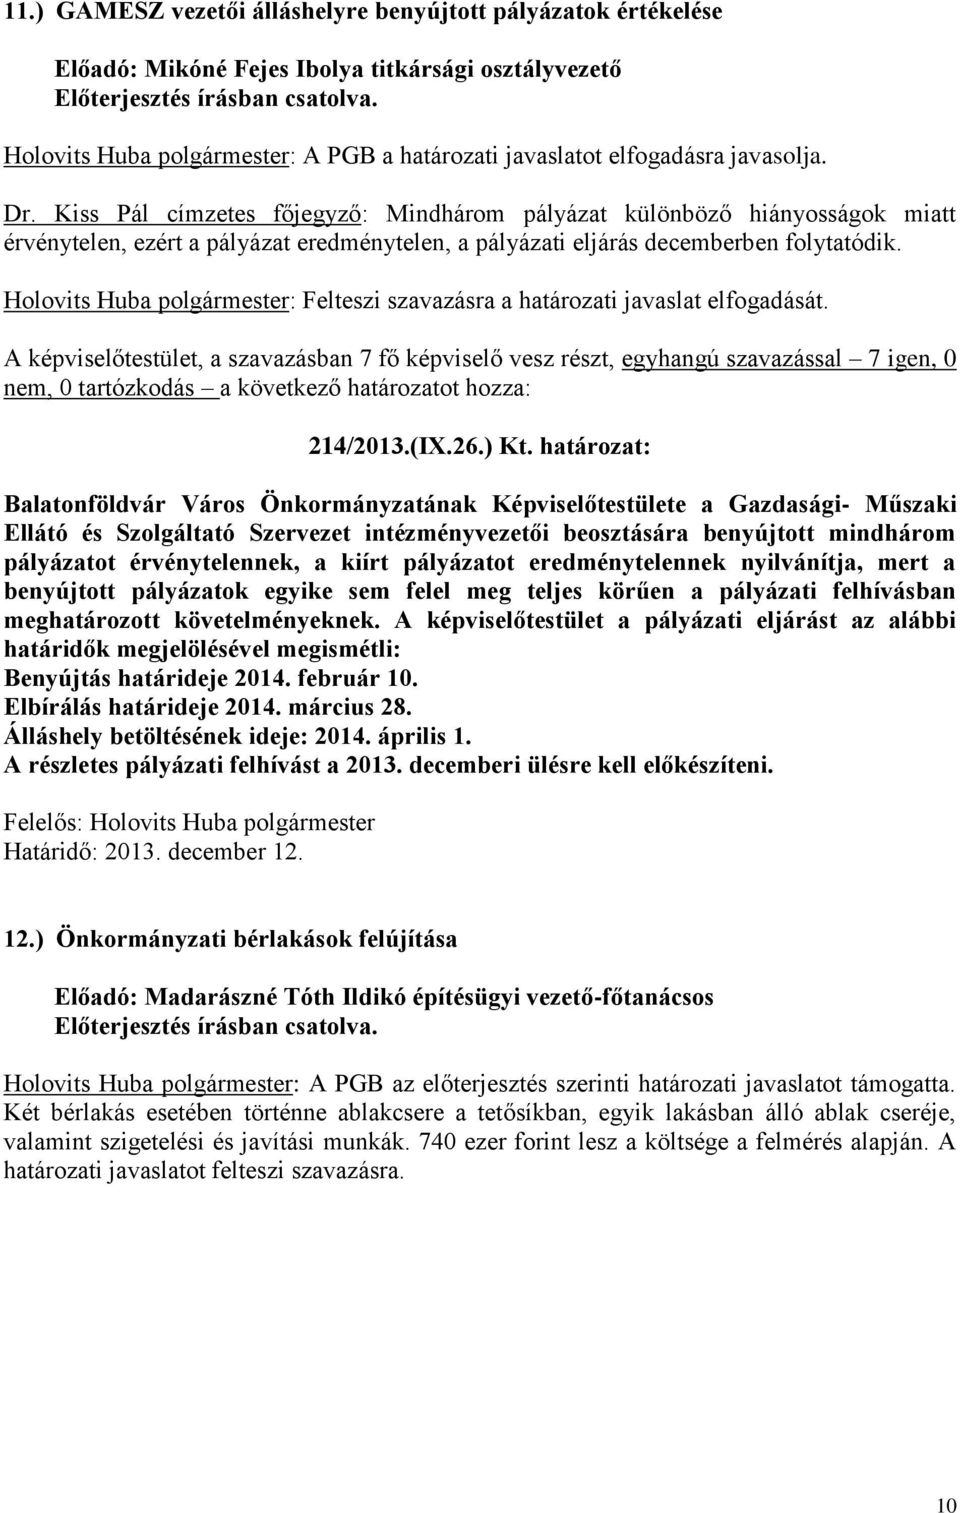 Holovits Huba polgármester: Felteszi szavazásra a határozati javaslat elfogadását. 214/2013.(IX.26.) Kt.